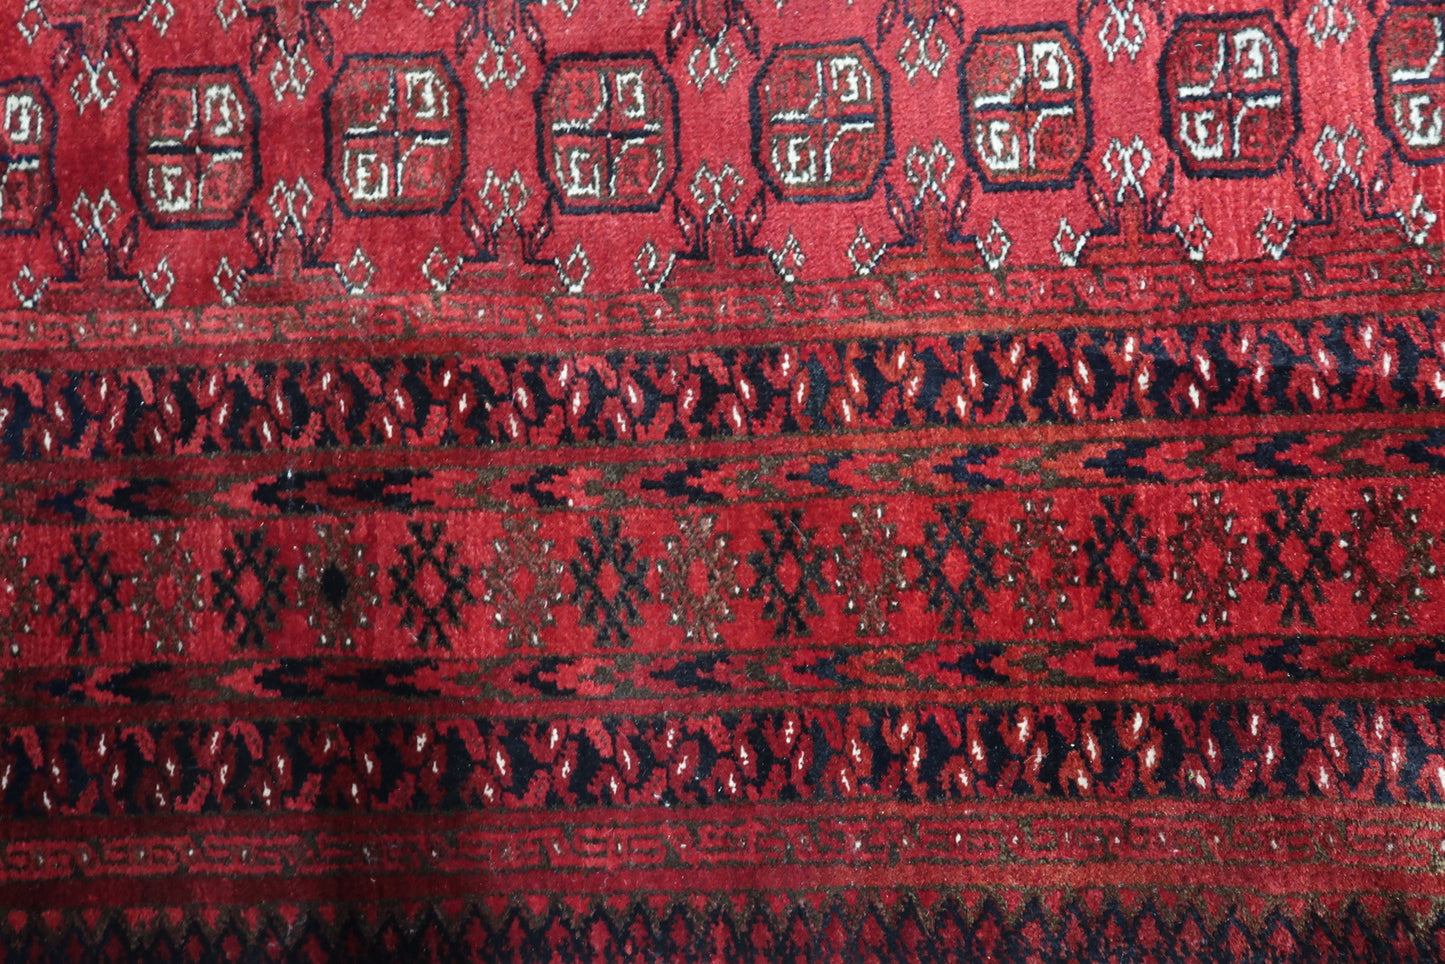 "Textured Wool Patterns of Handmade Afghan Ersari Rug